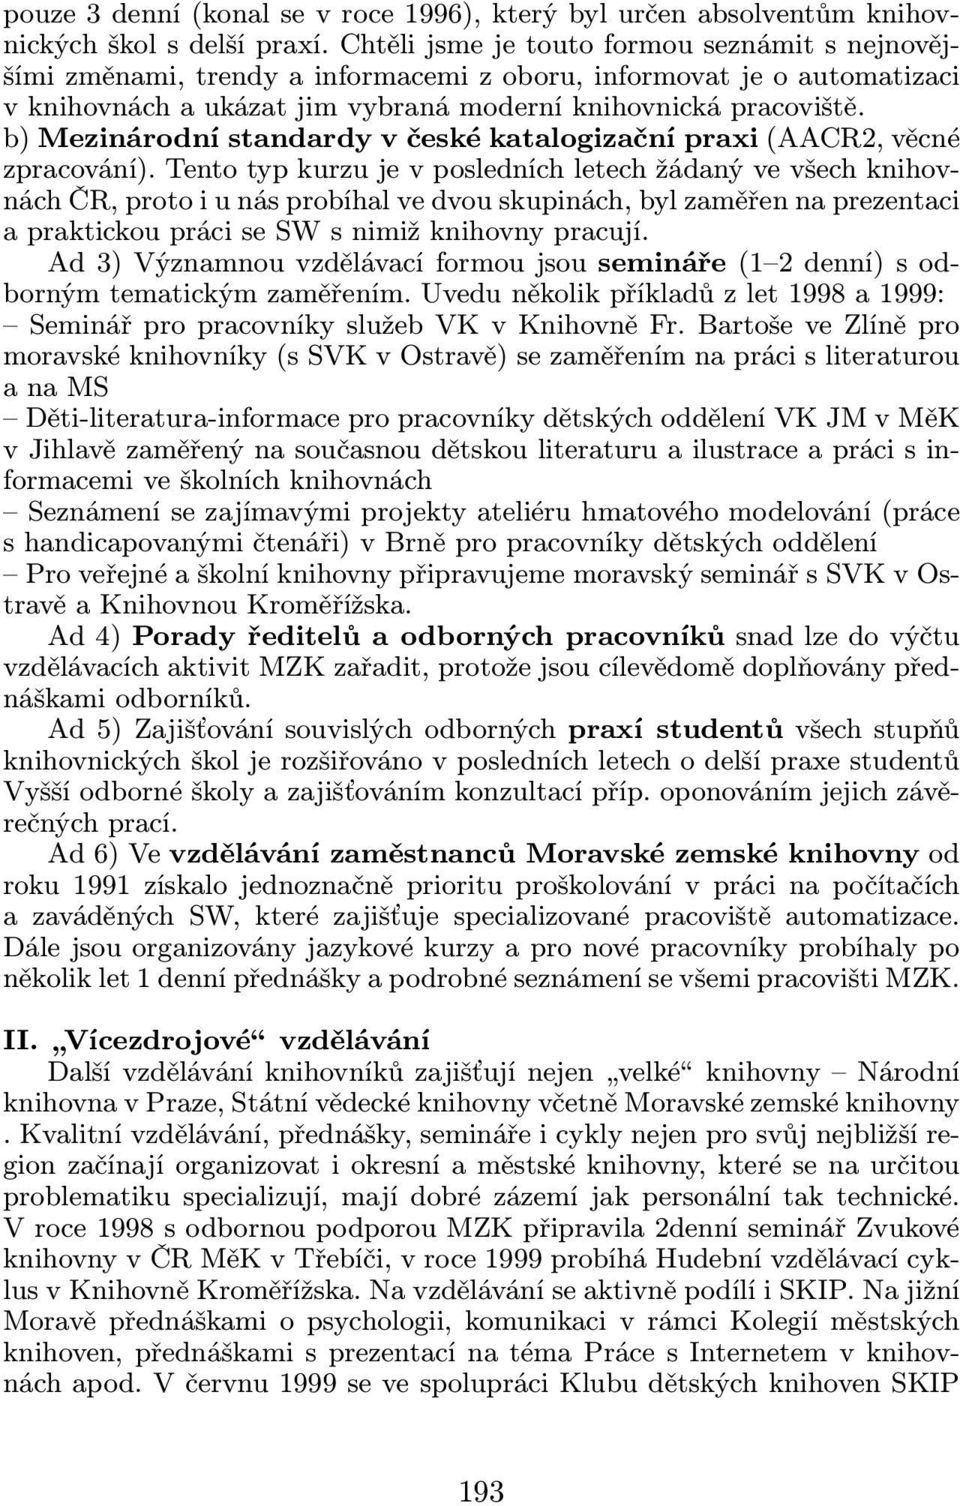 b) Mezinárodní standardy v české katalogizační praxi(aacr2, věcné zpracování).